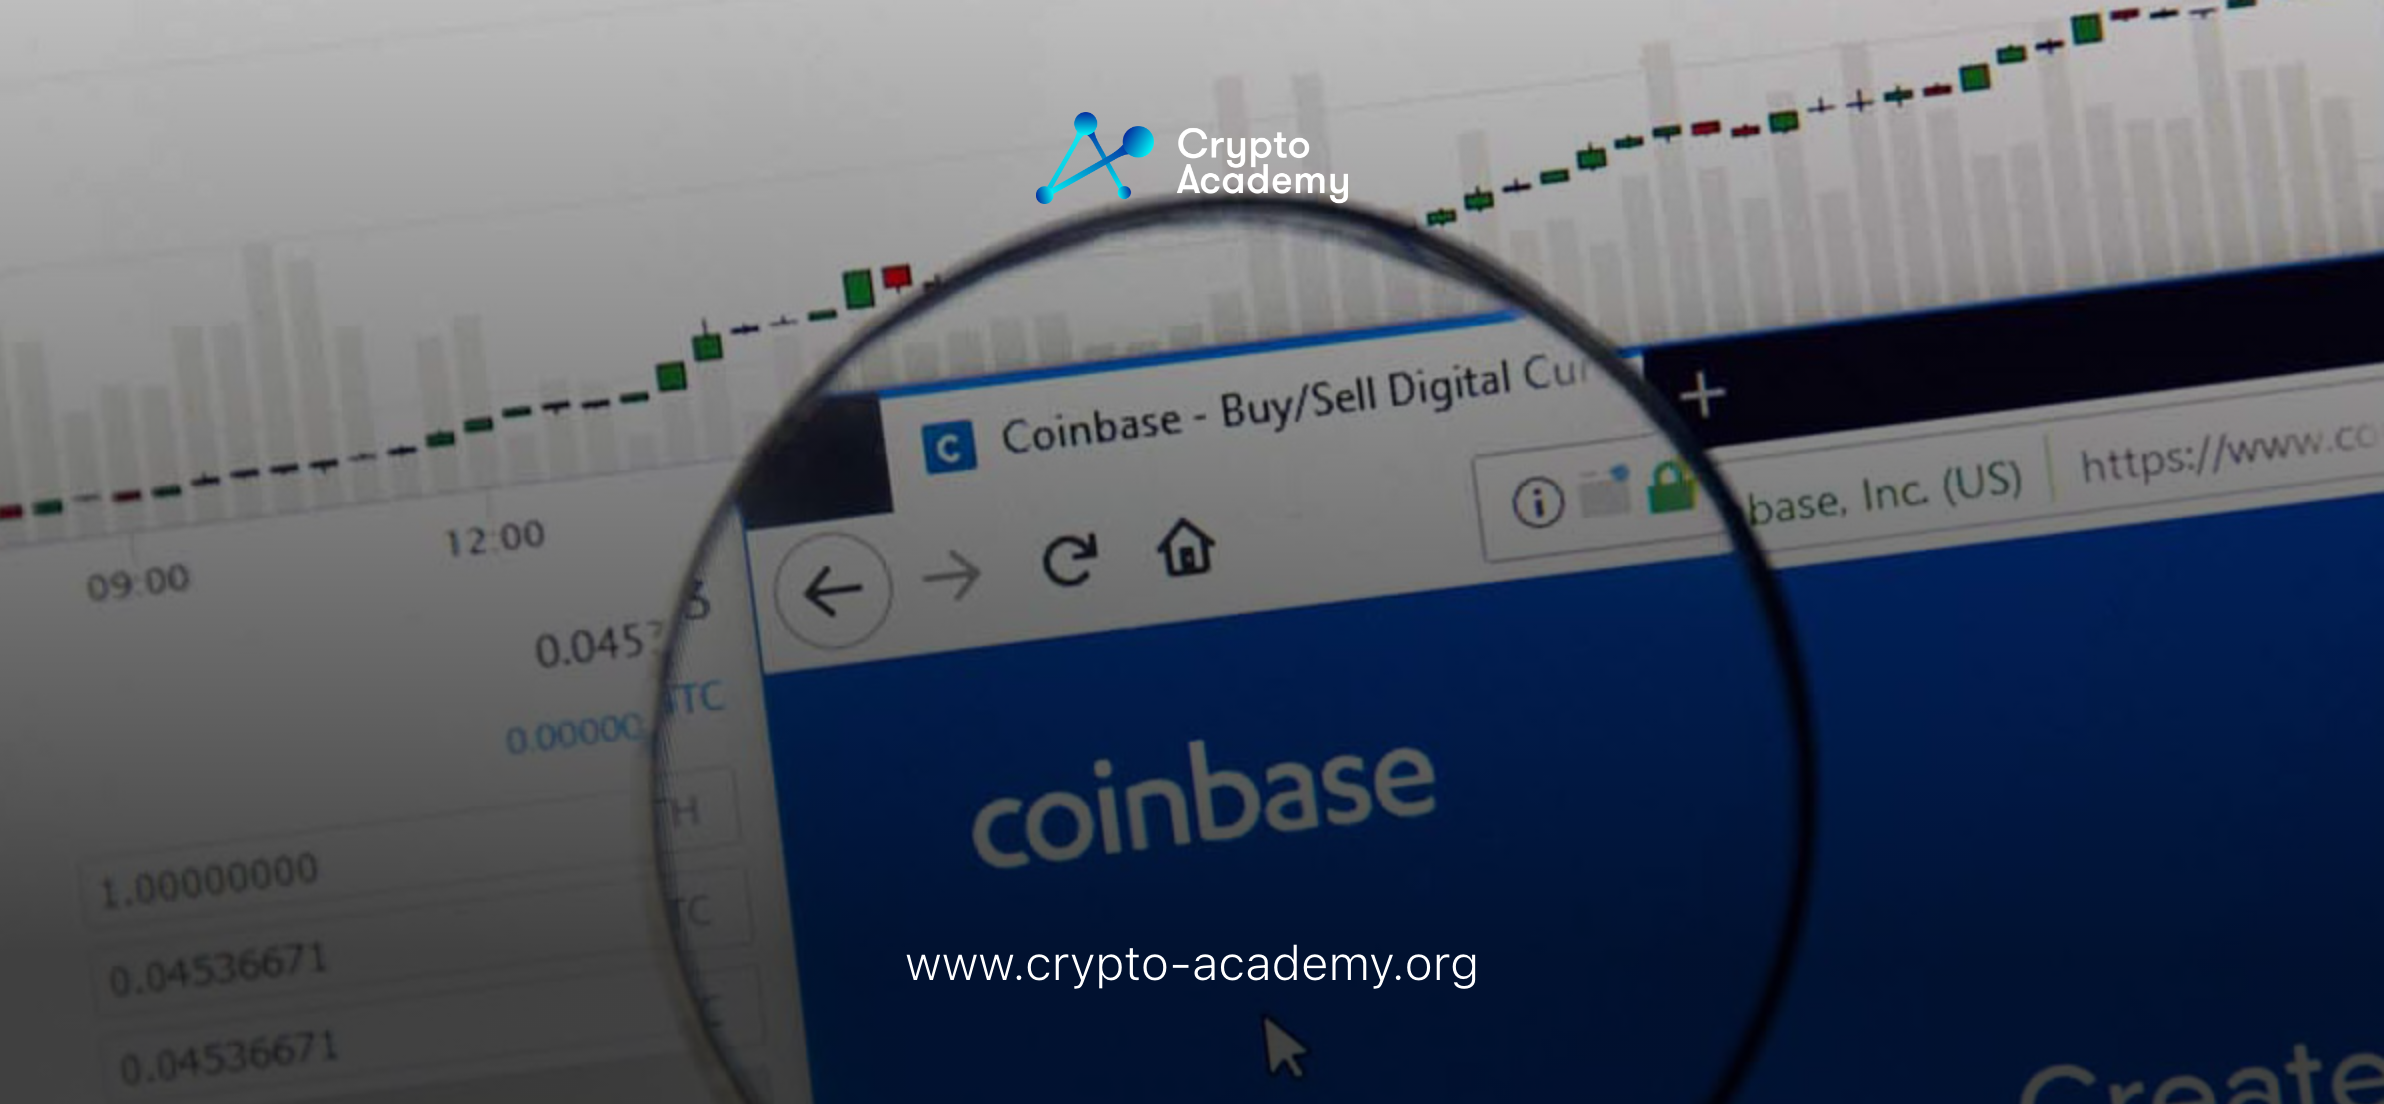 Coinbase Simplifies Crypto Wallet, Announces Seamless